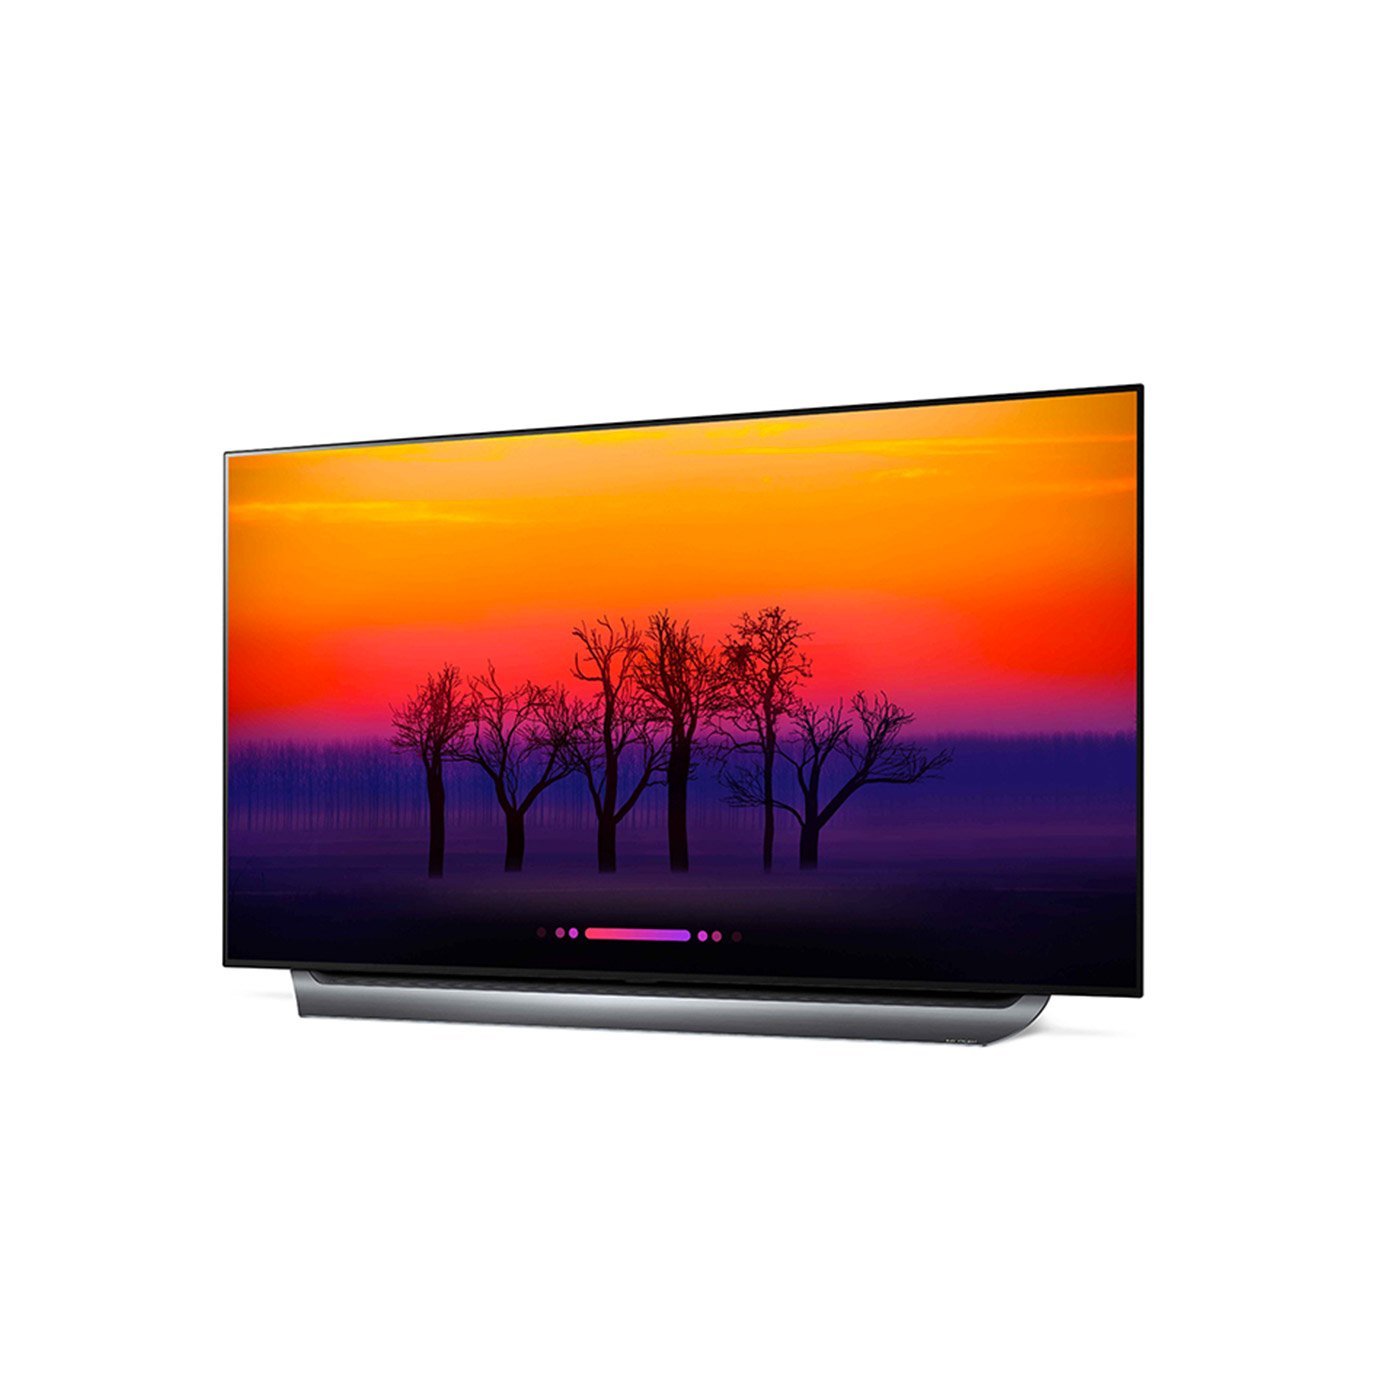 LG OLED55E8PUA 55-Inch 4K Ultra HD Smart OLED TV